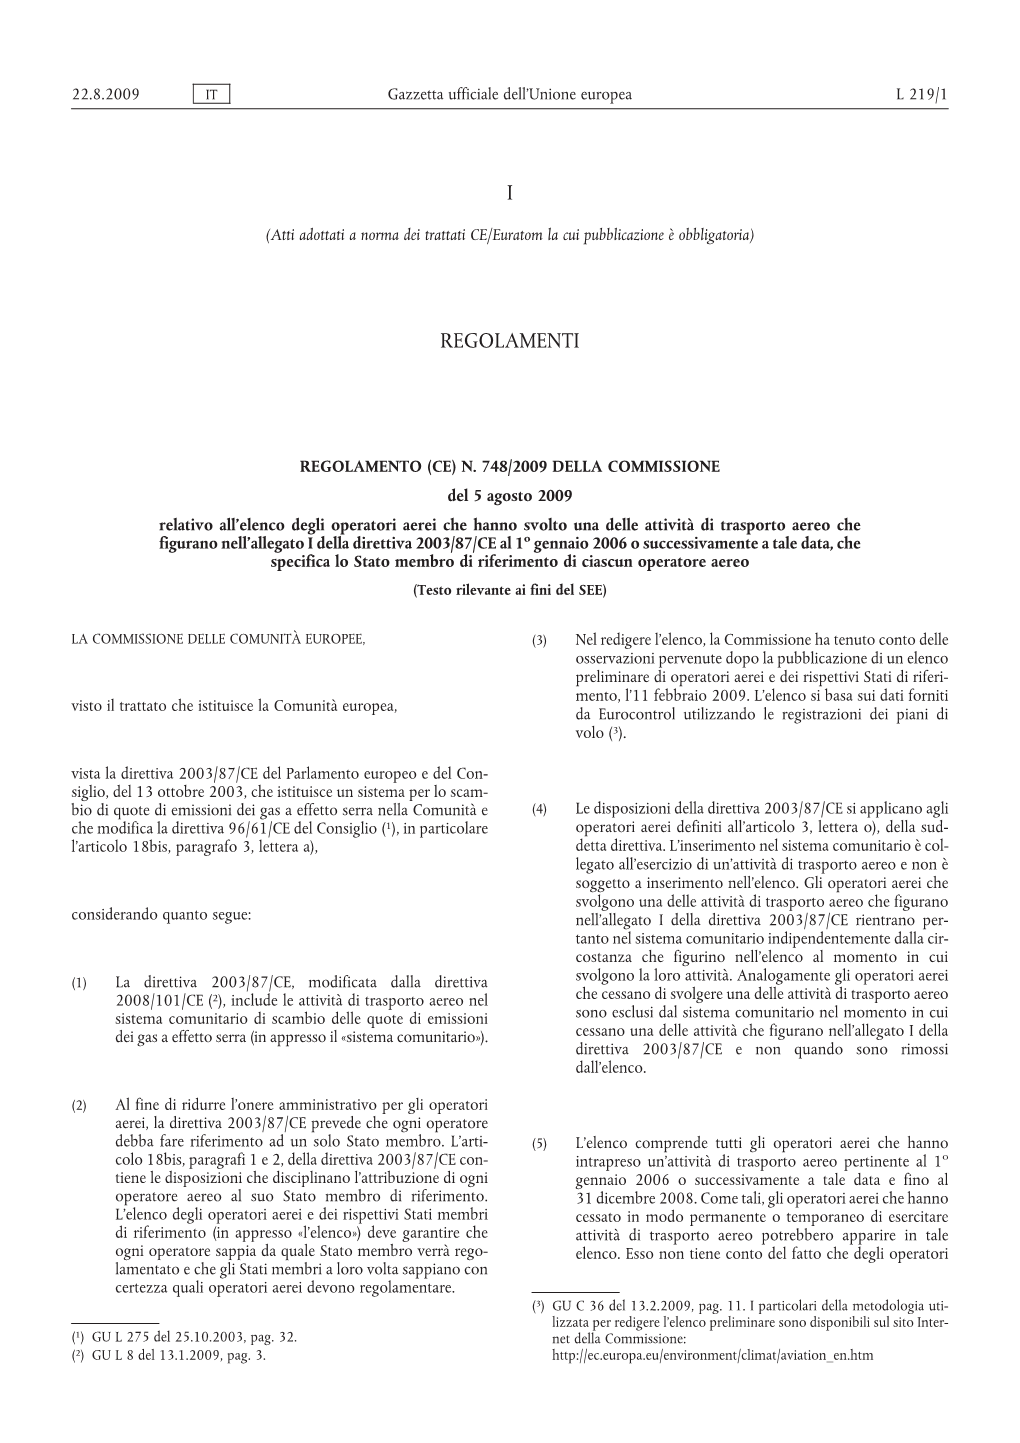 Regolamento (CE) N. 748/2009 Della Commissione, Del